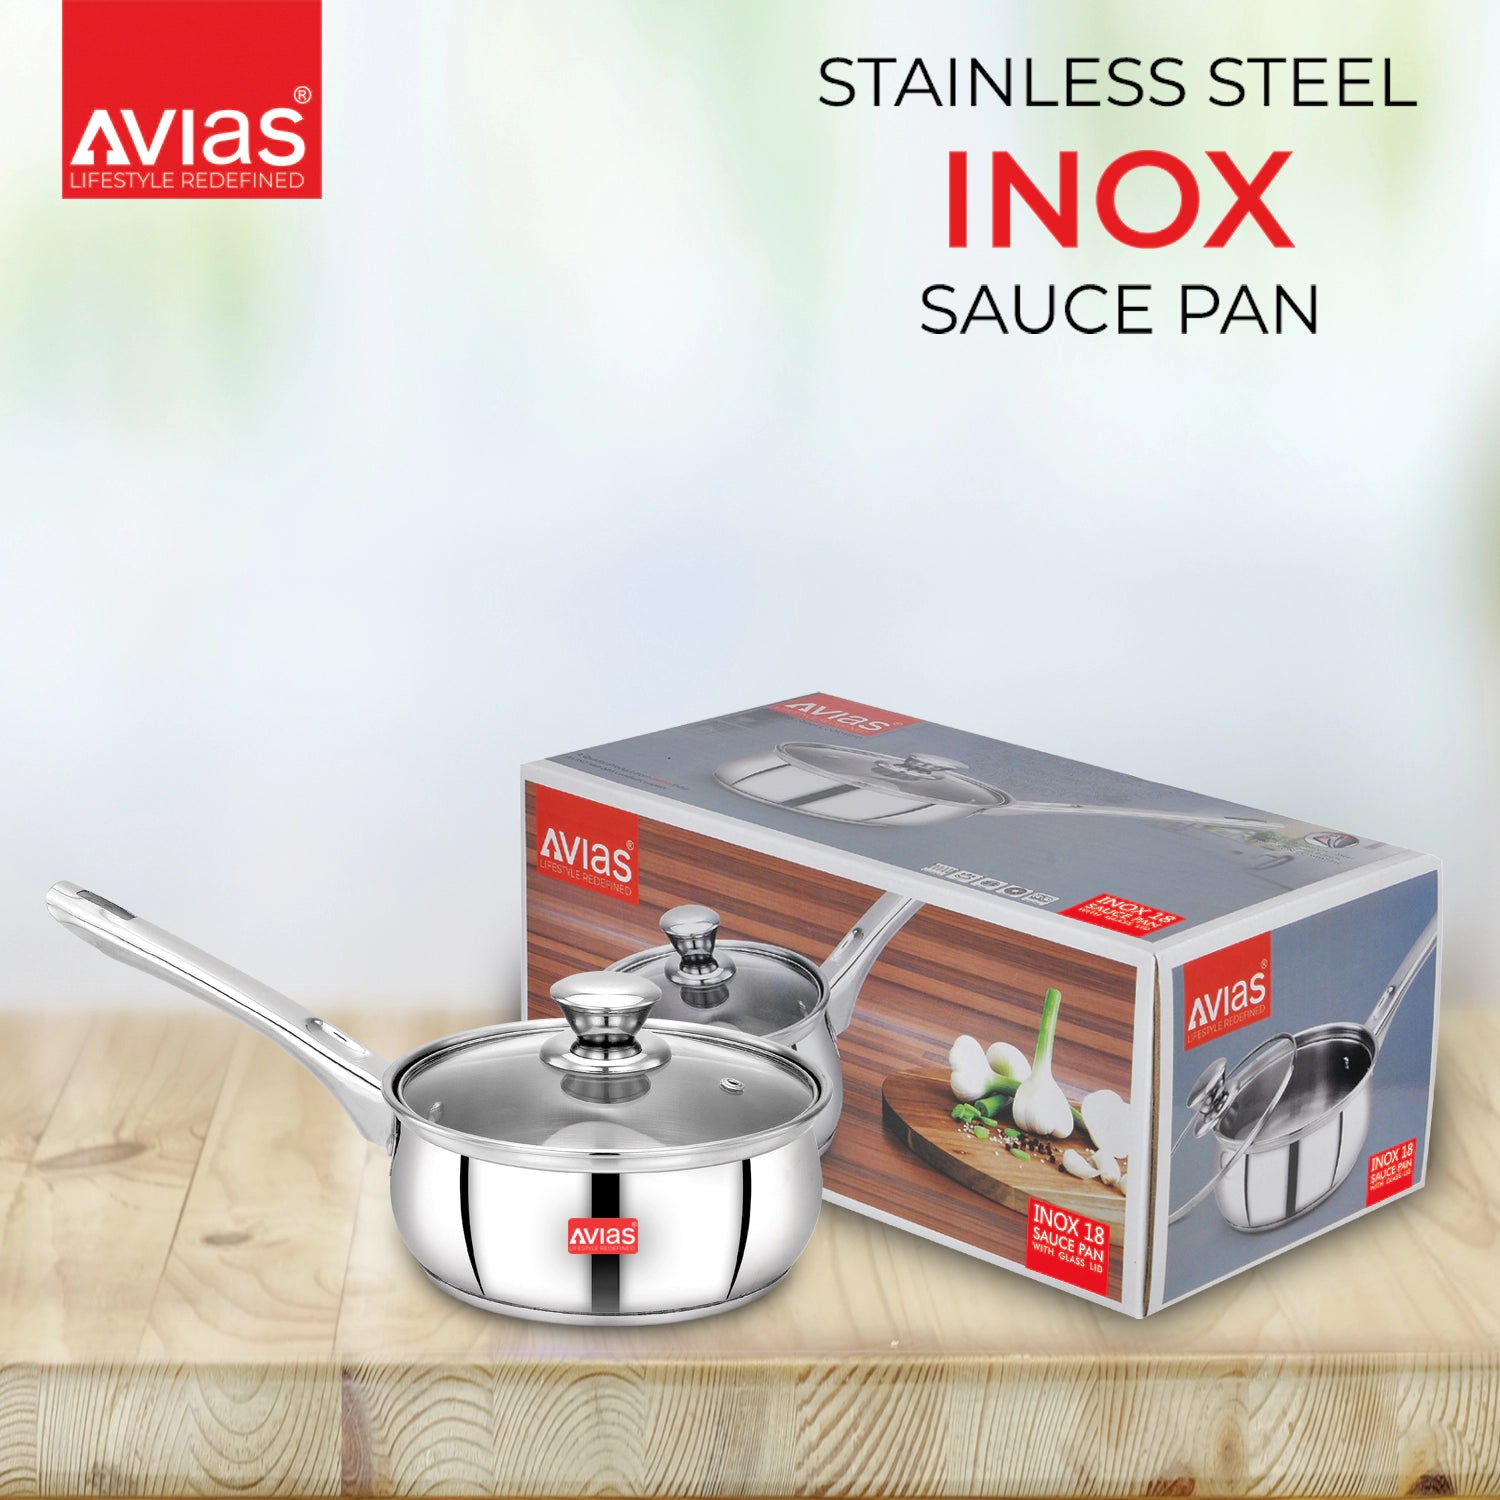 AVIAS Inox IB stainless Steel Saucepan package